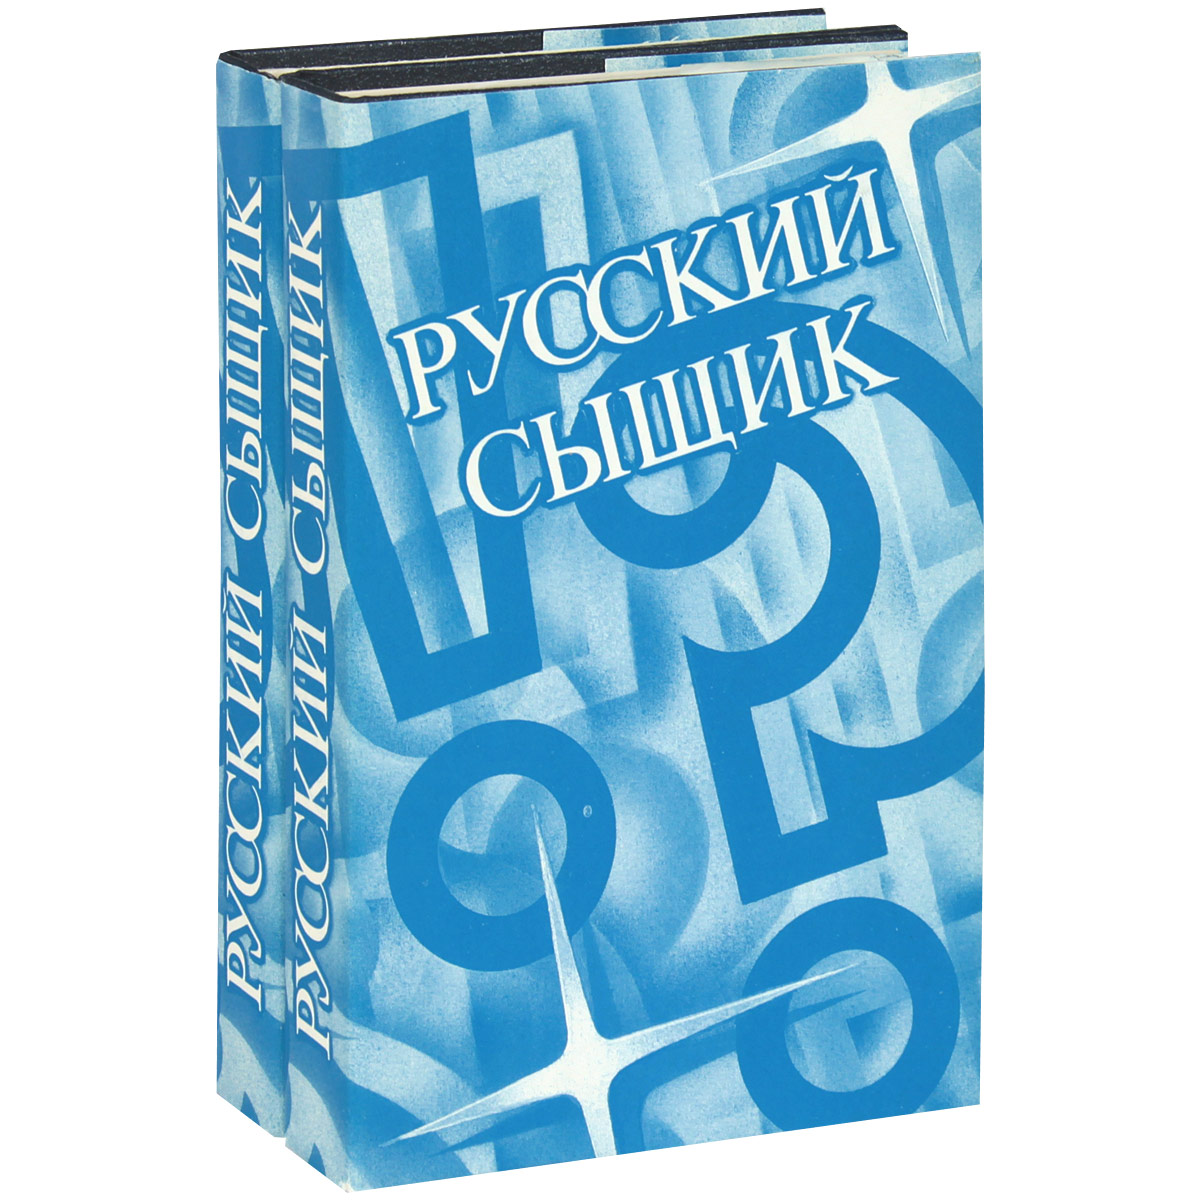  - «Русский сыщик. Том 1-2 (комплект из 2 книг)»